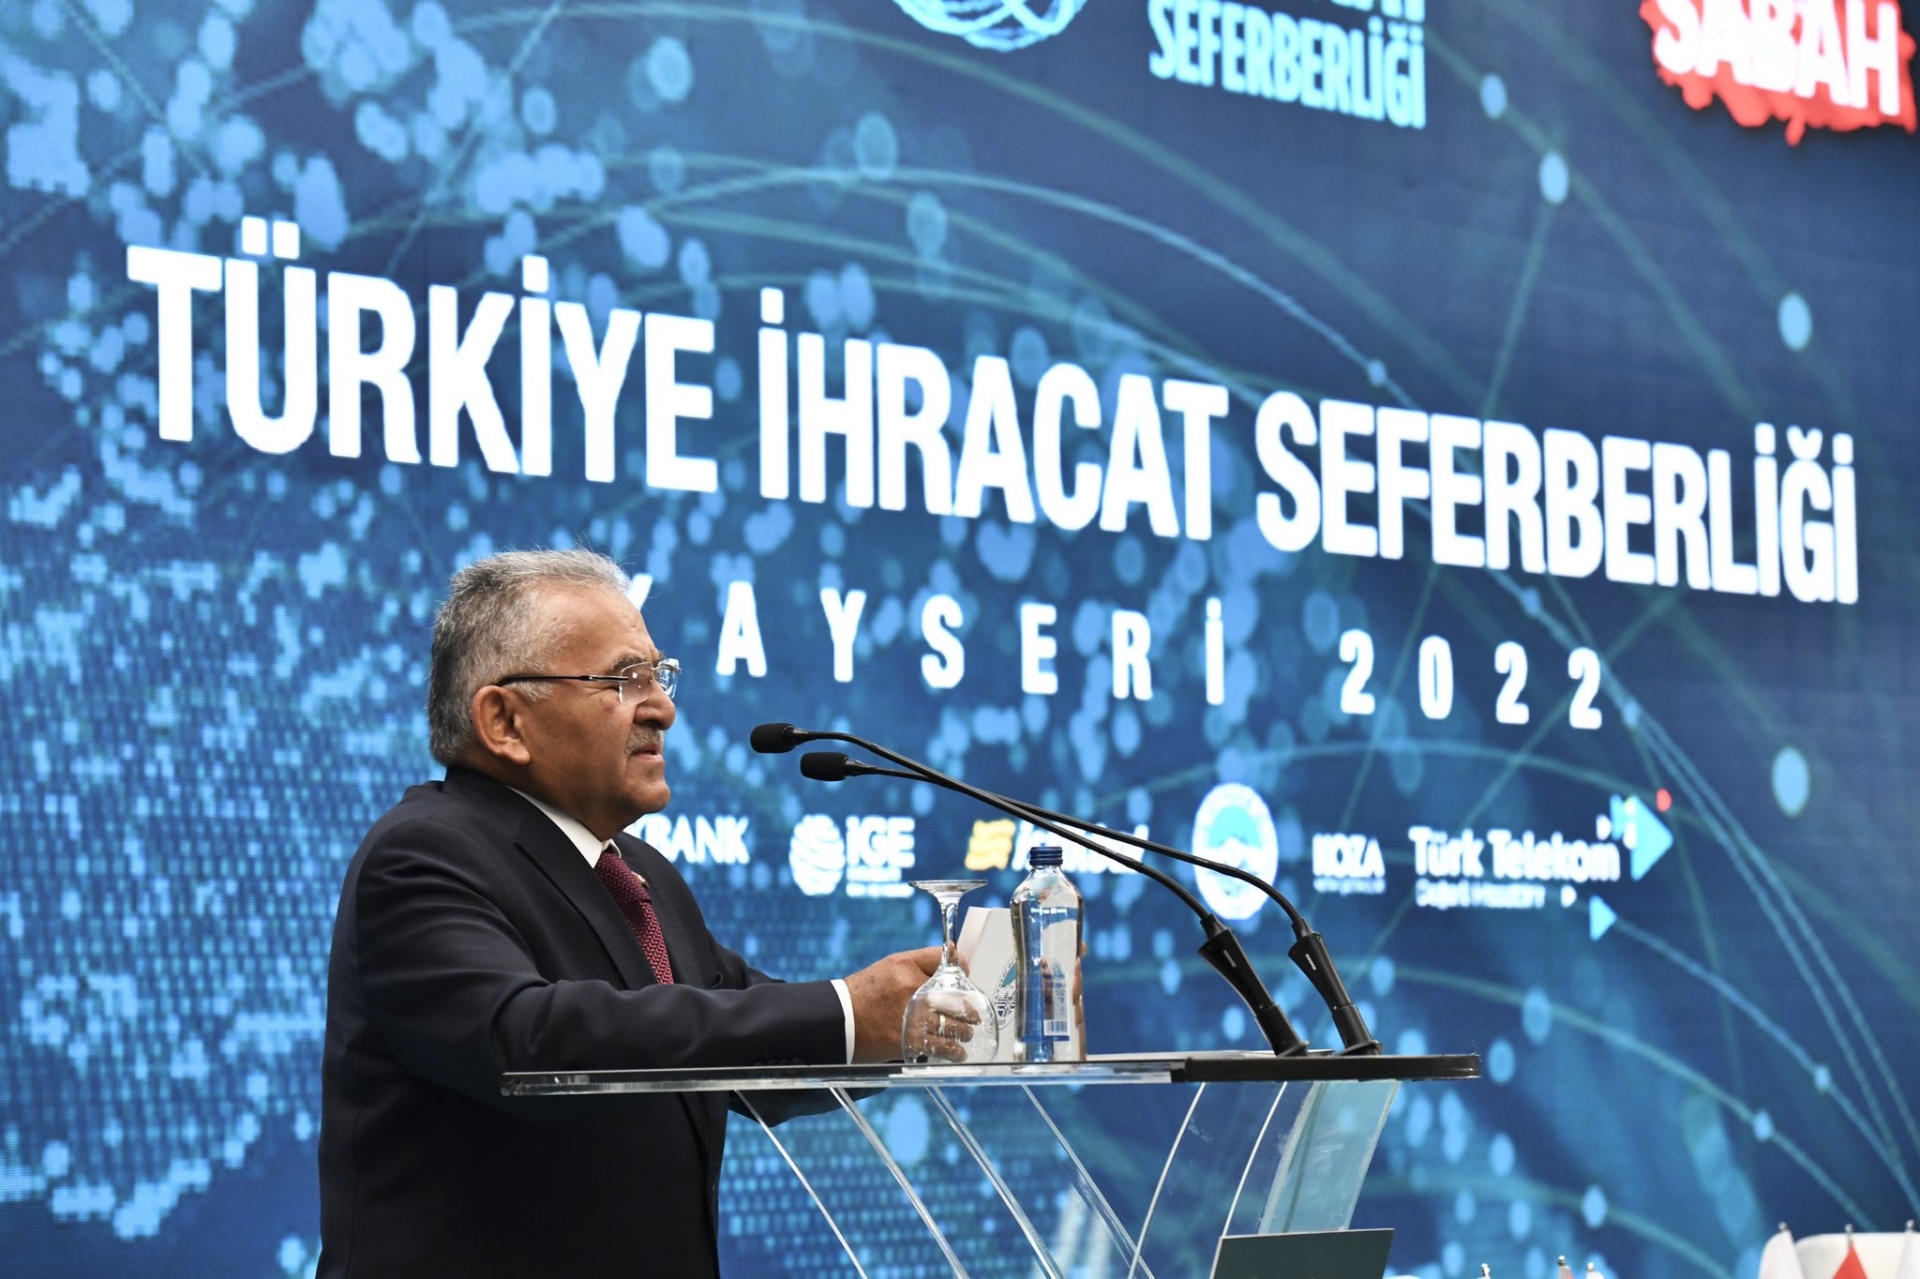 Büyükkılıç, Türkiye İhracat Seferberliği Zirvesi’nde Konuştu: “Belediyecilikte Model Oluşturduk”